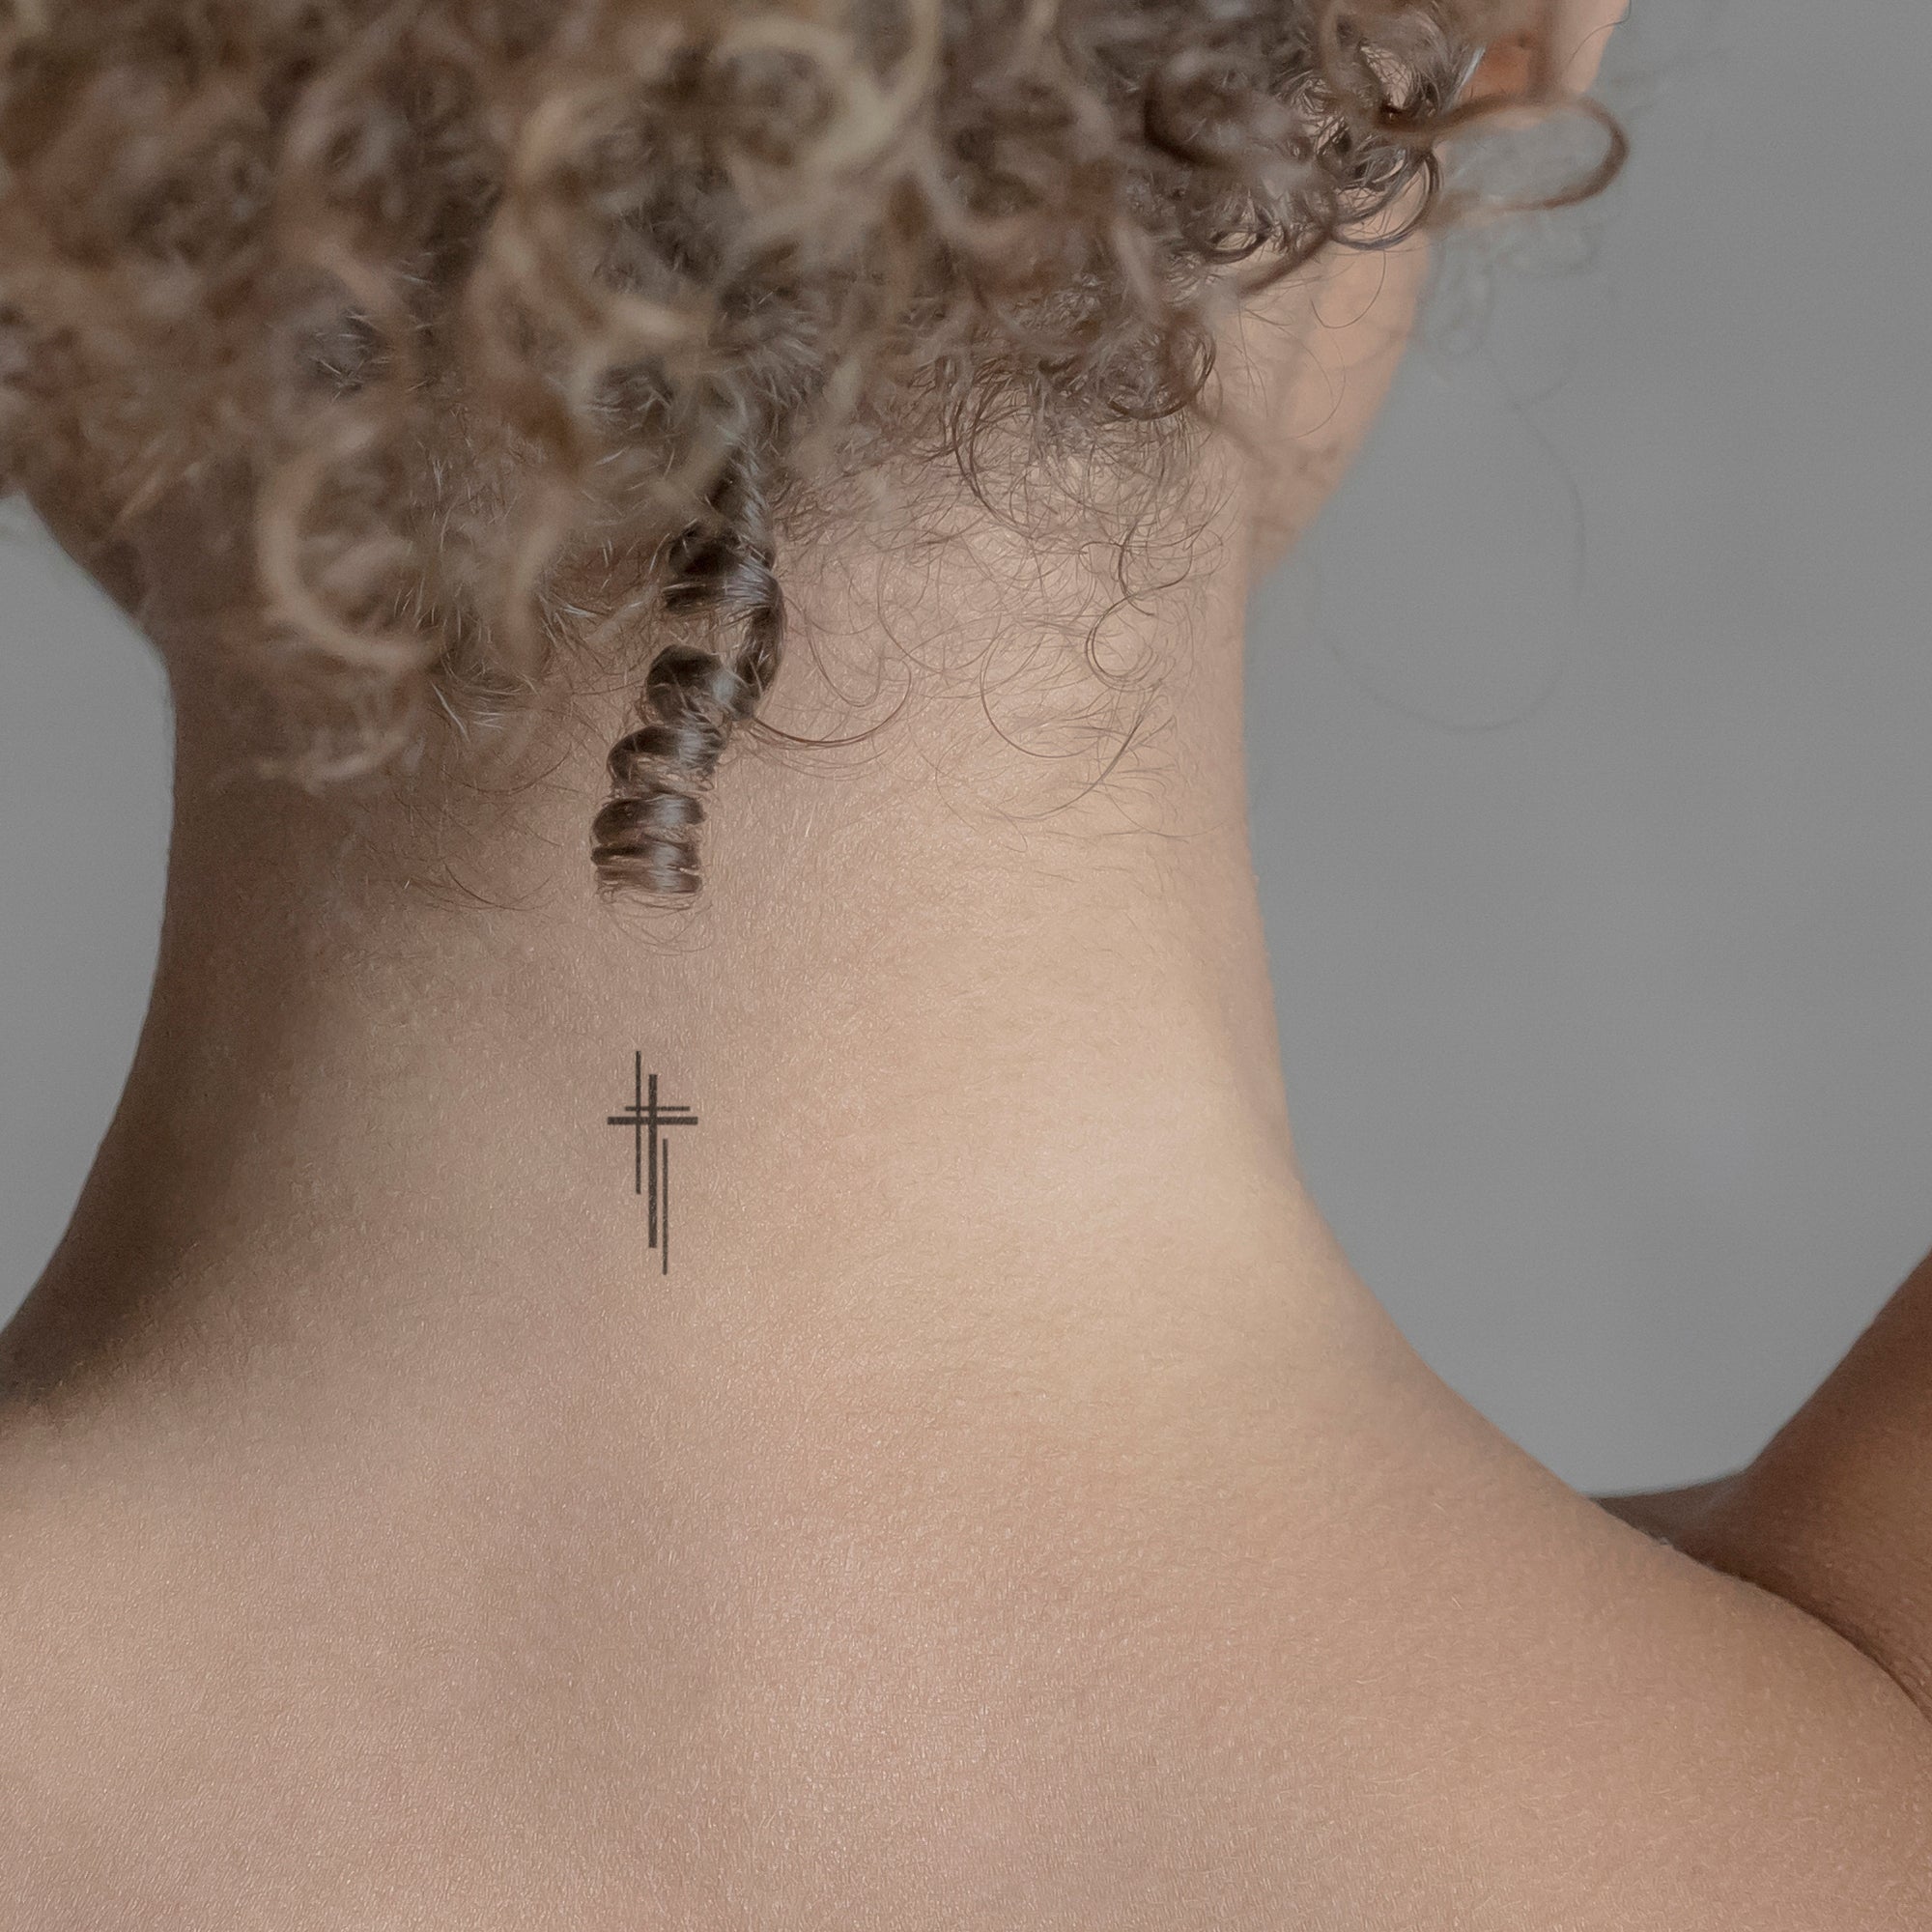 Faith Cross Temporary Tattoo / Religious Tattoo - Etsy Hong Kong